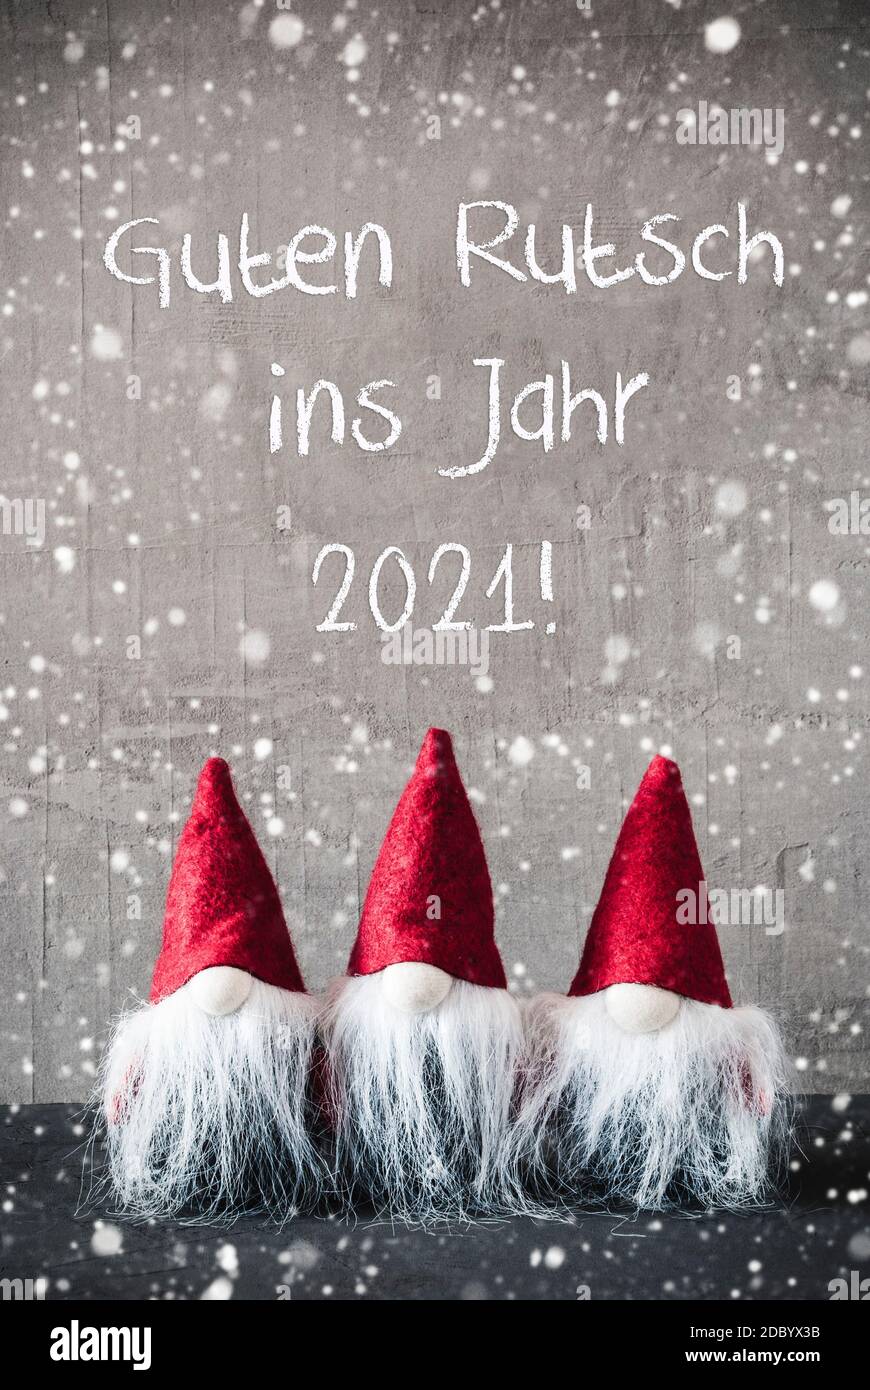 Trois gnomes gris avec texte anglais Guten Rutsch ins Jahr 2021 signifie bonne année et chapeau de sac de gelée rouge. Fond de ciment urbain avec flocons de neige. Ven Banque D'Images